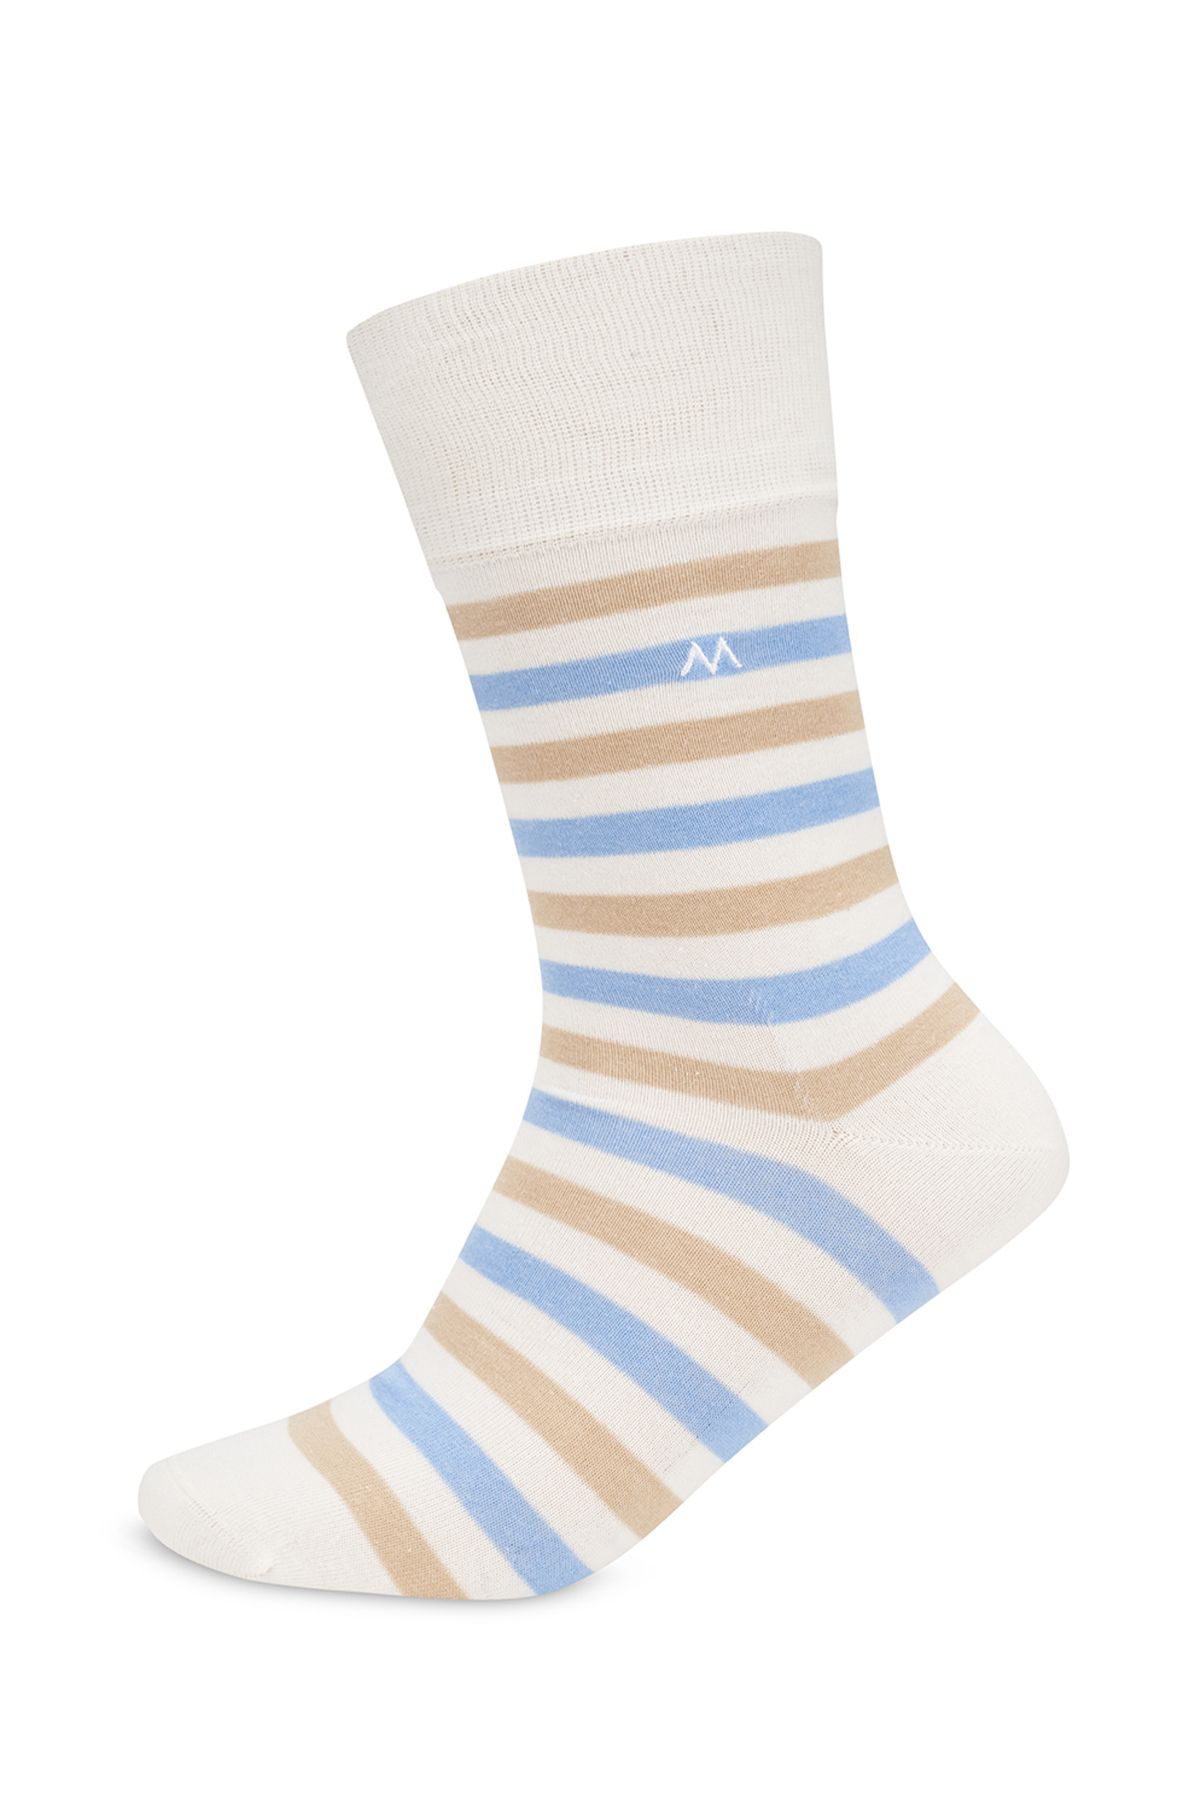 Hemington Çizgili Kırık Beyaz Yazlık Pamuk Çorap